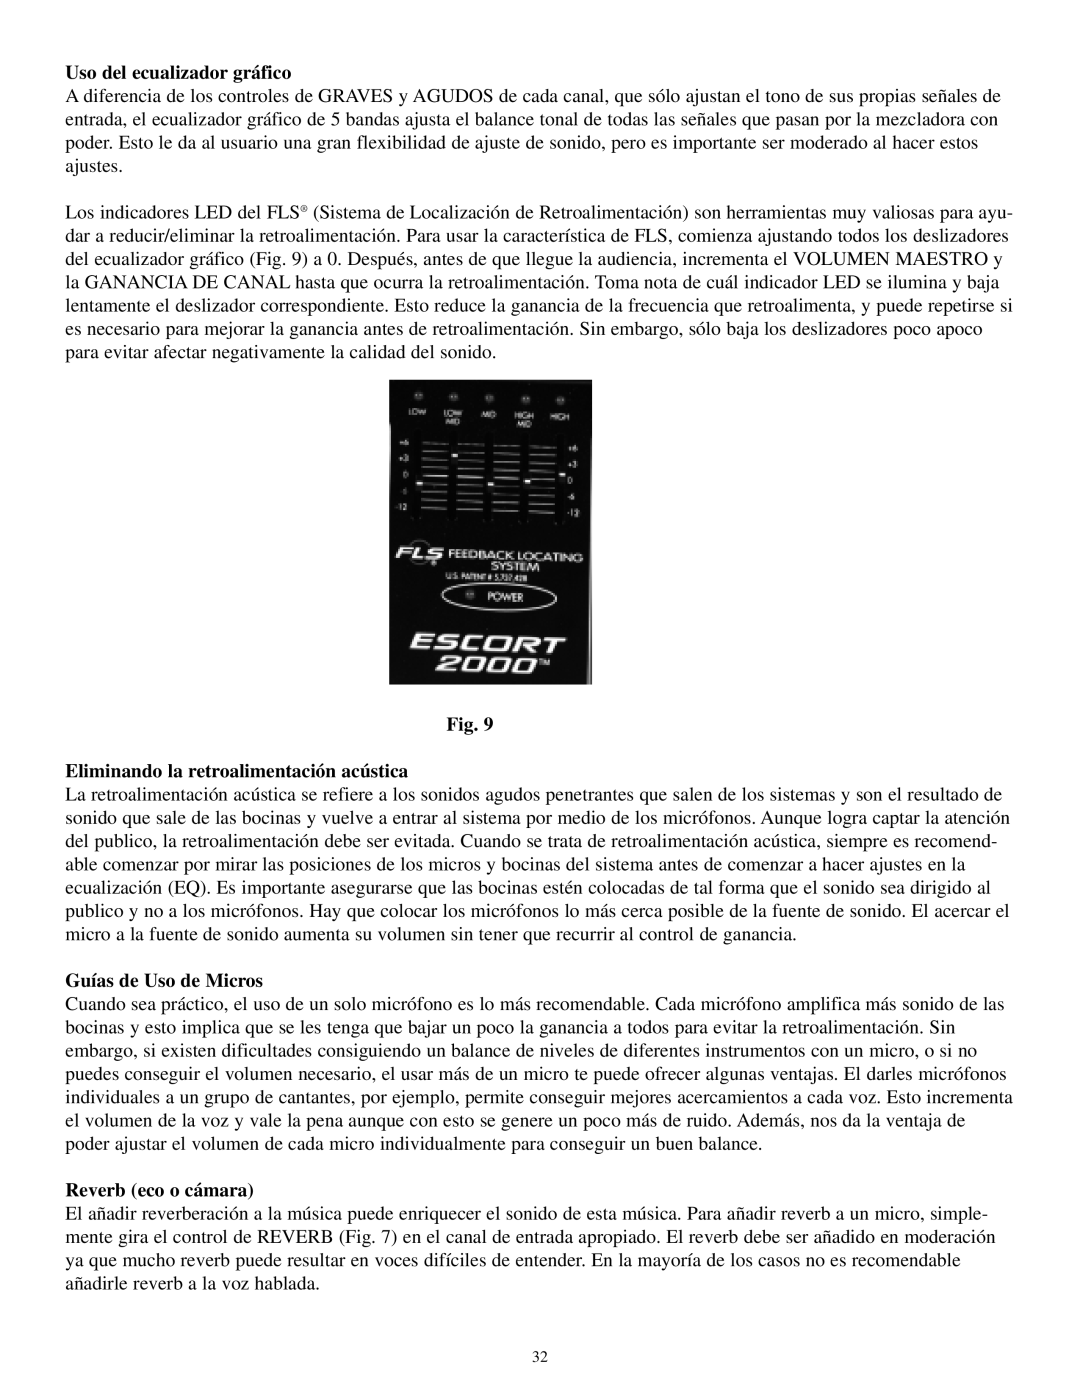 Musica 2000 manual Uso del ecualizador gráfico, Eliminando la retroalimentación acústica, Guías de Uso de Micros 